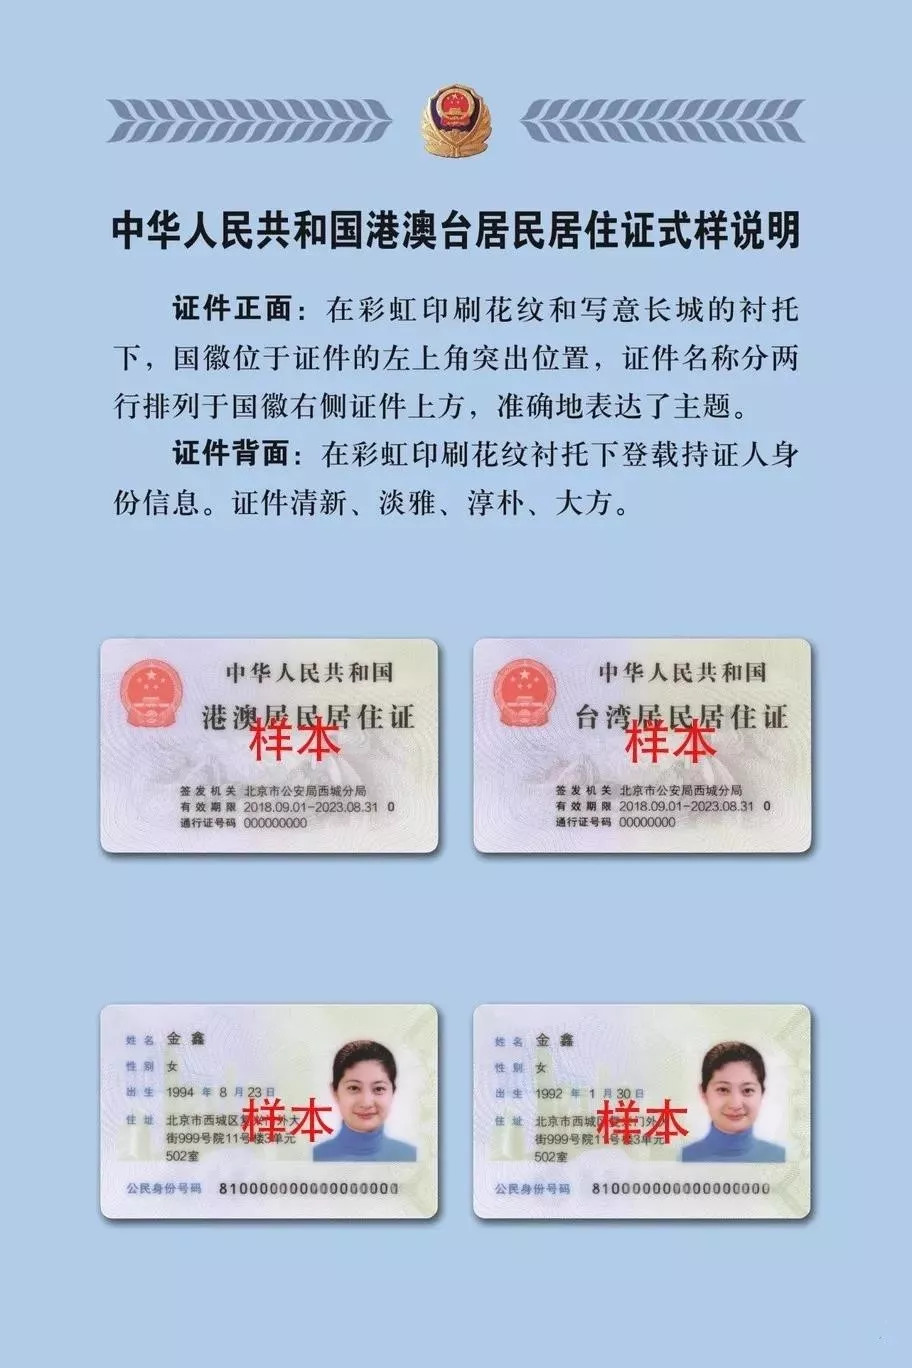 萍乡市首批港澳台居民居住证发放中......功能相当强大 这6个地方可以办理